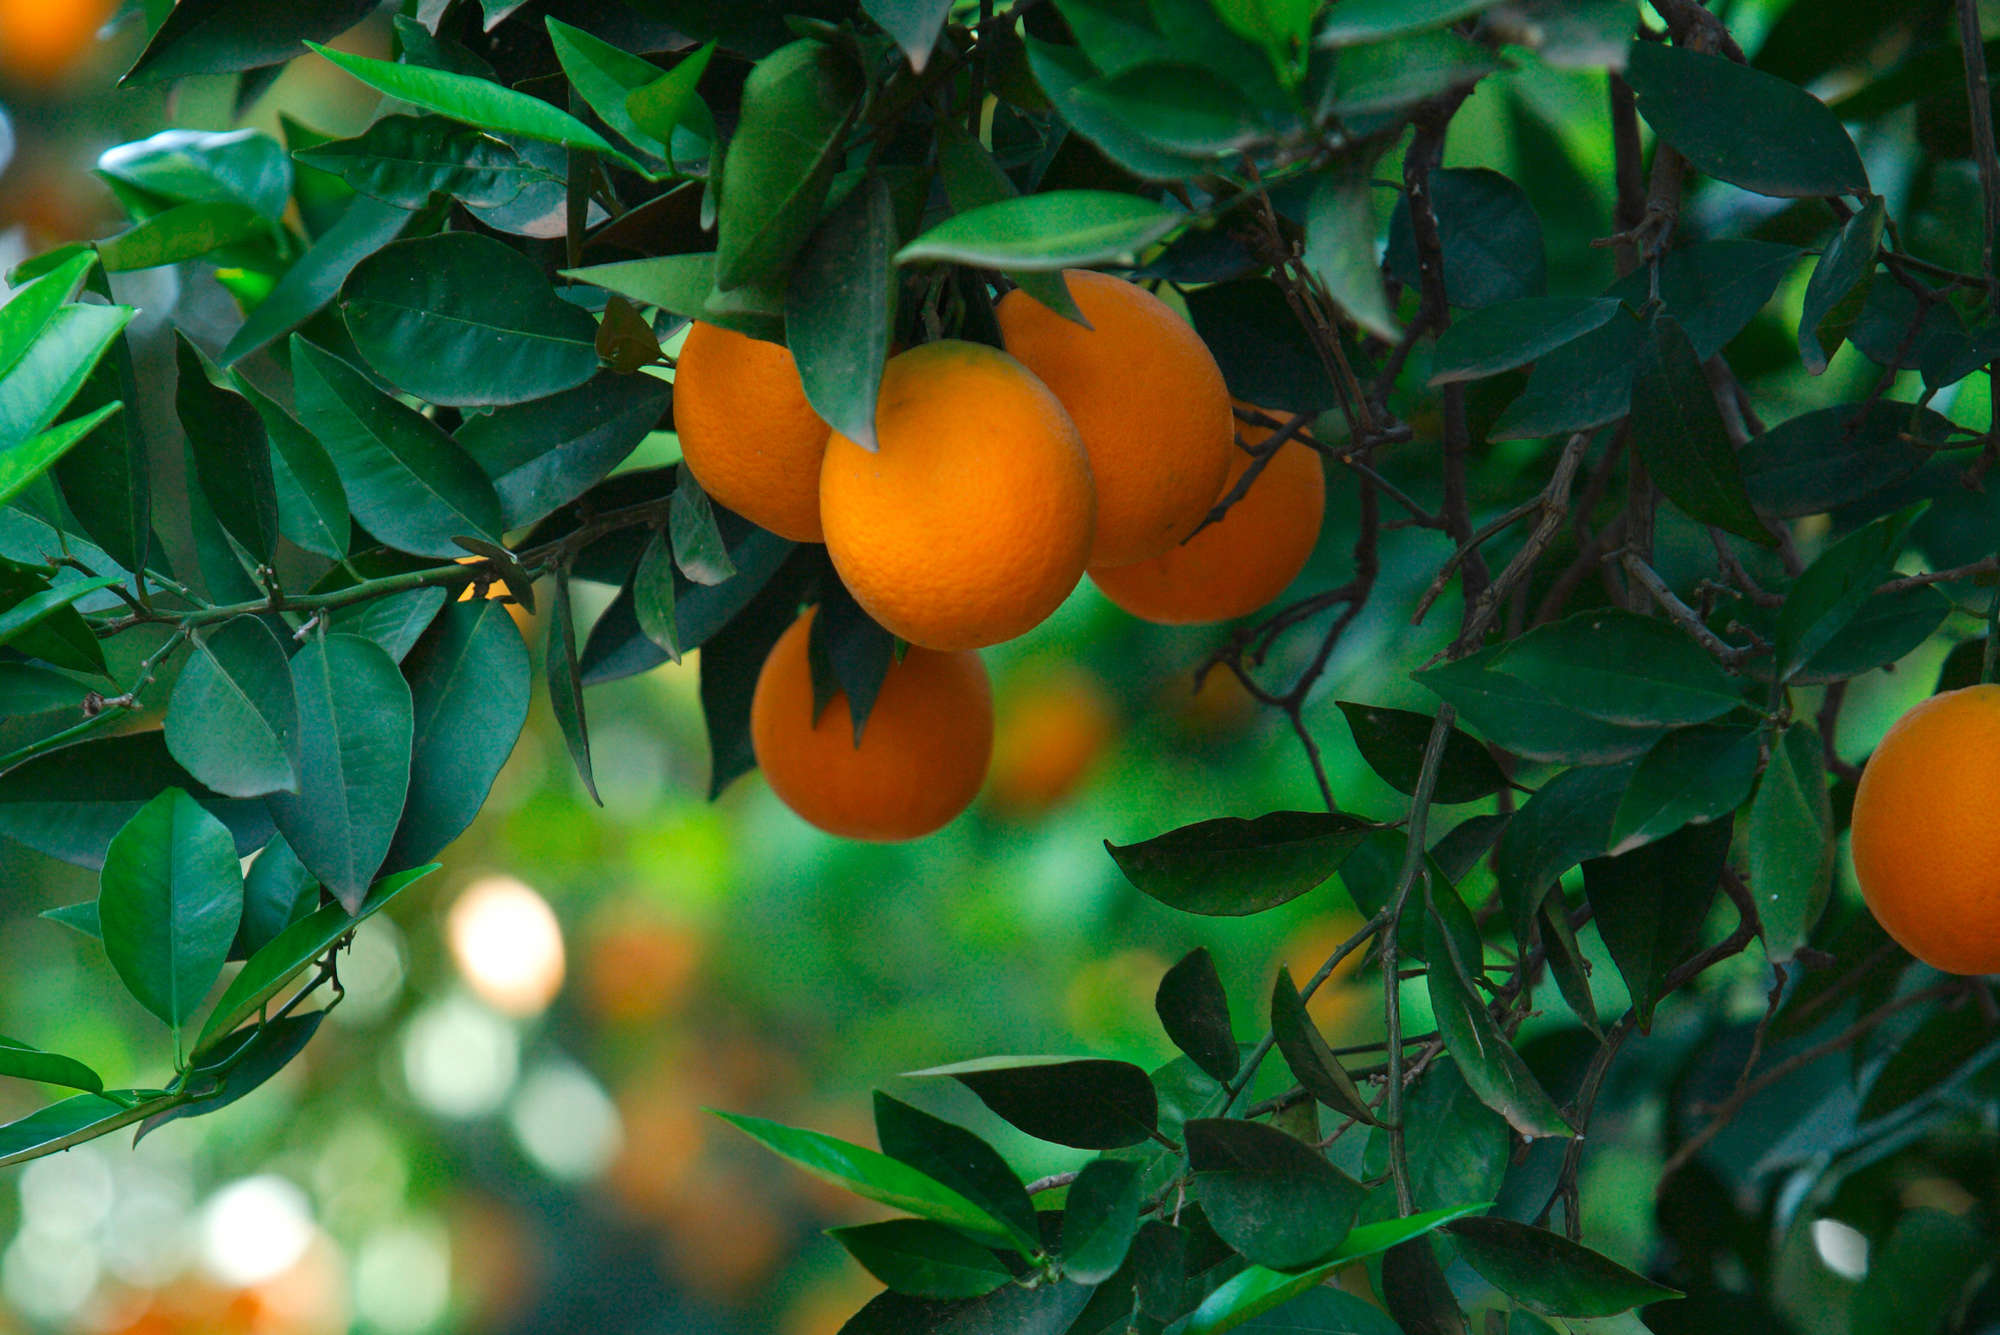             Fototapete Baum mit Früchten – Premium Glattvlies
        